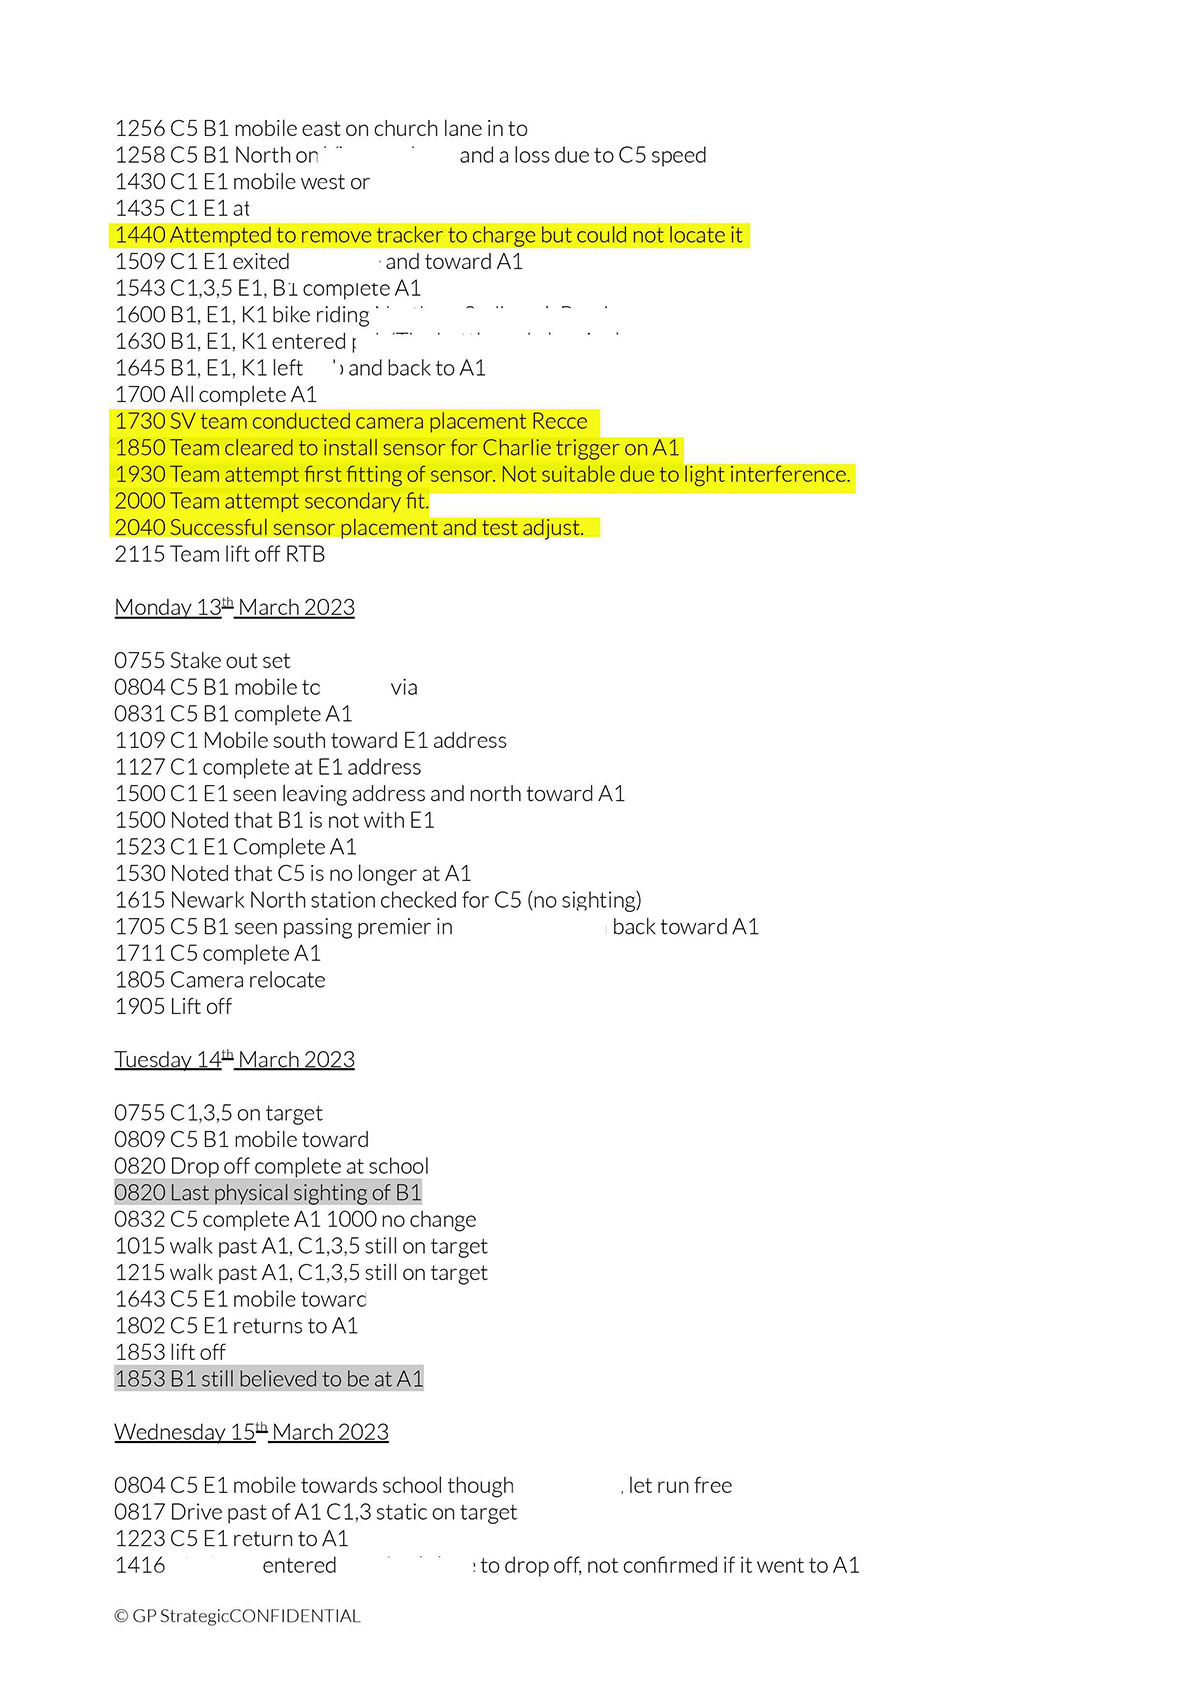 investigations/greyprism-weekly-surveillance-sample-page-redacted.jpg